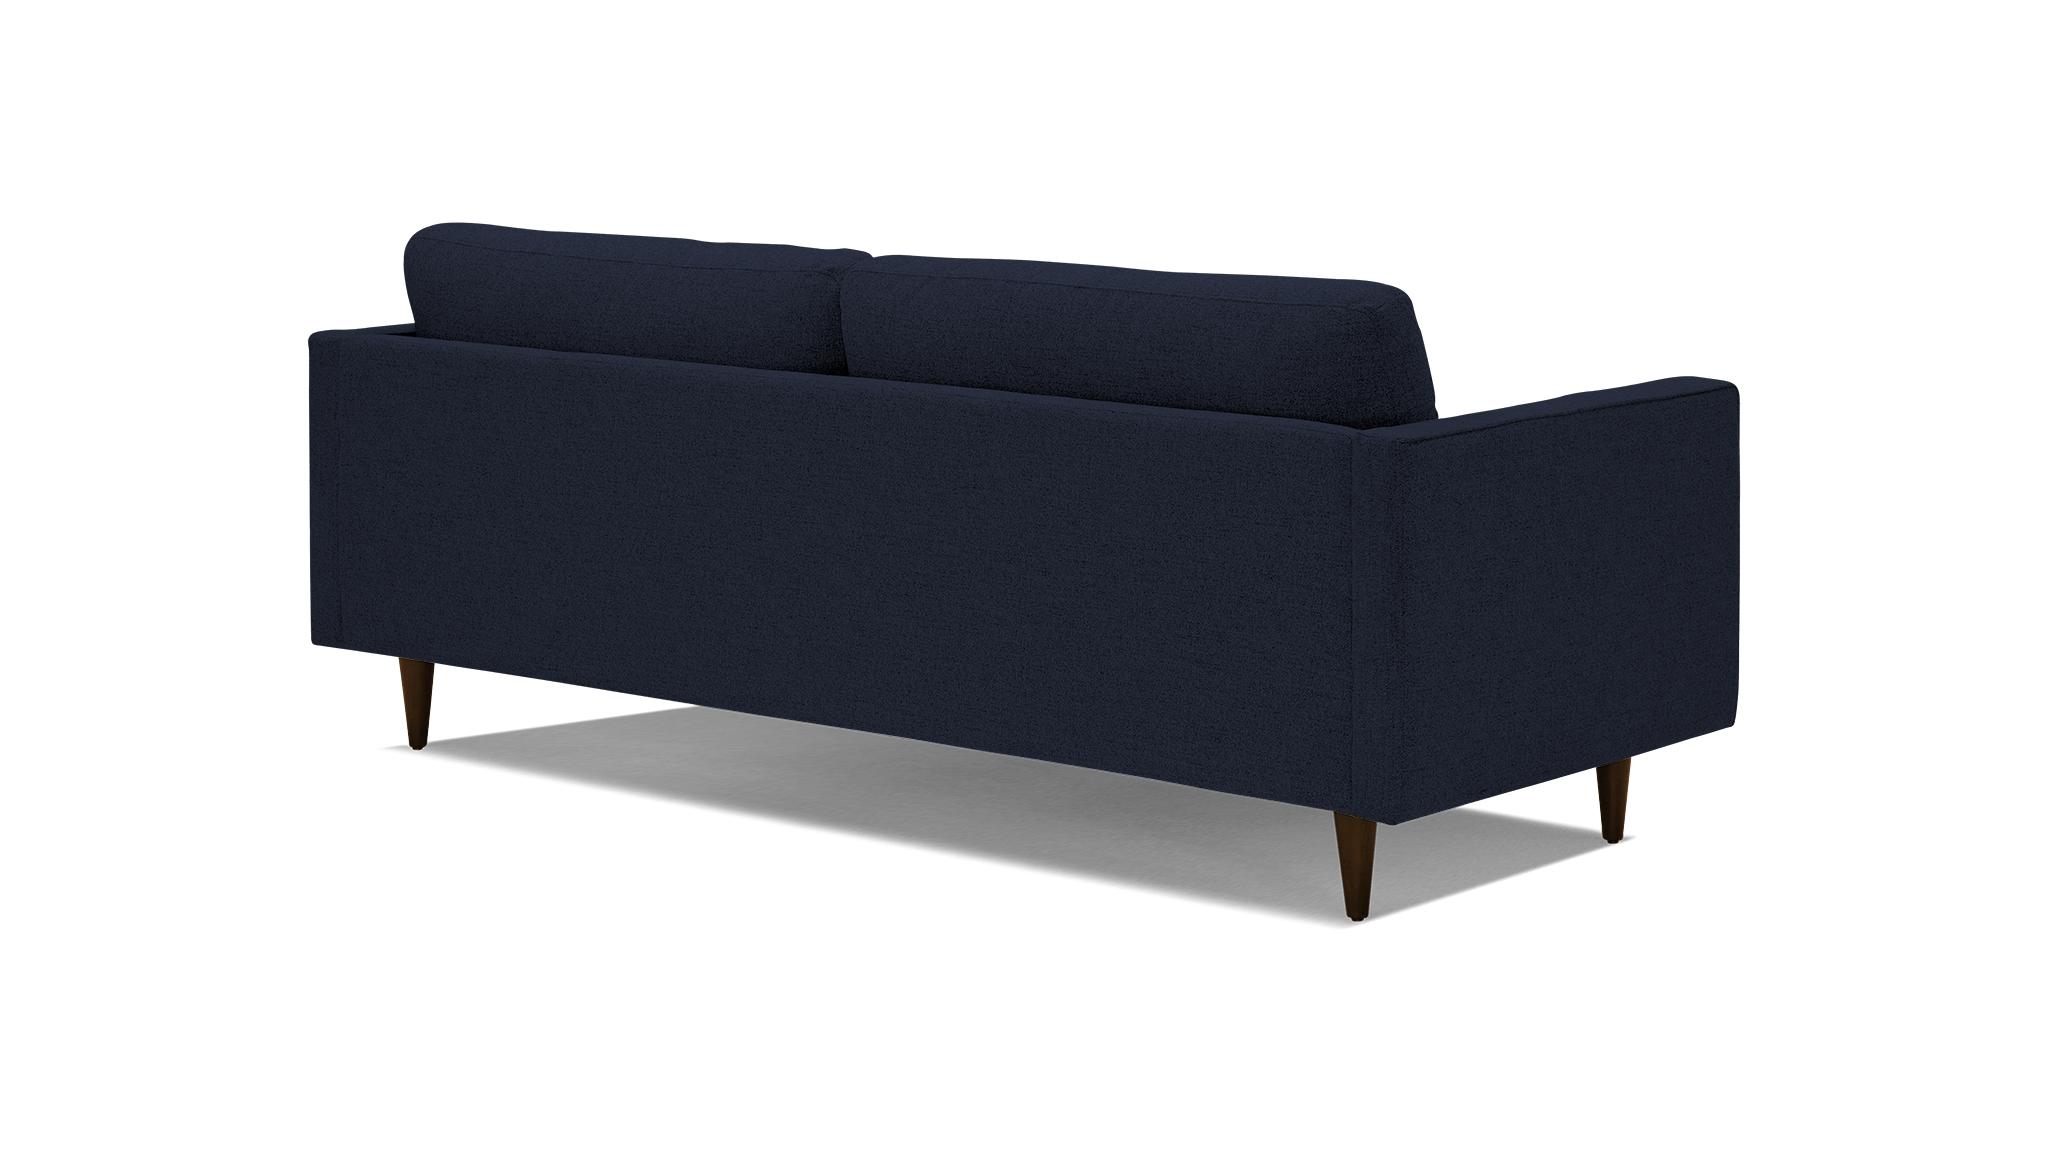 Blue Briar Mid Century Modern Sofa - Sunbrella Premier Indigo - Mocha - Image 3